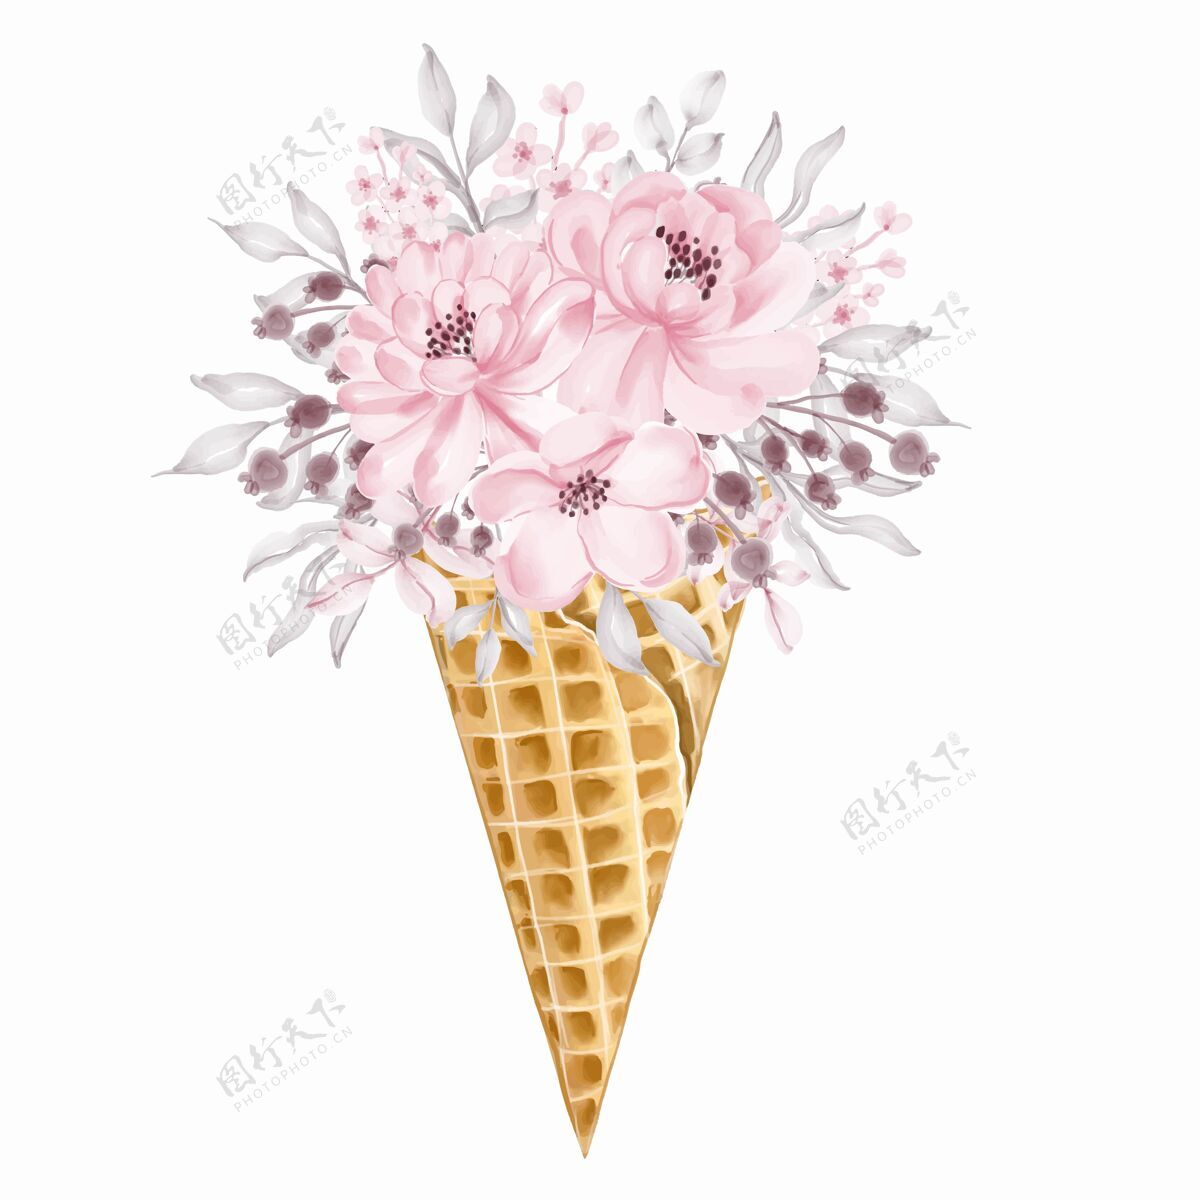 兰花浅粉色野花花束冰淇淋筒绘画圆锥体女性